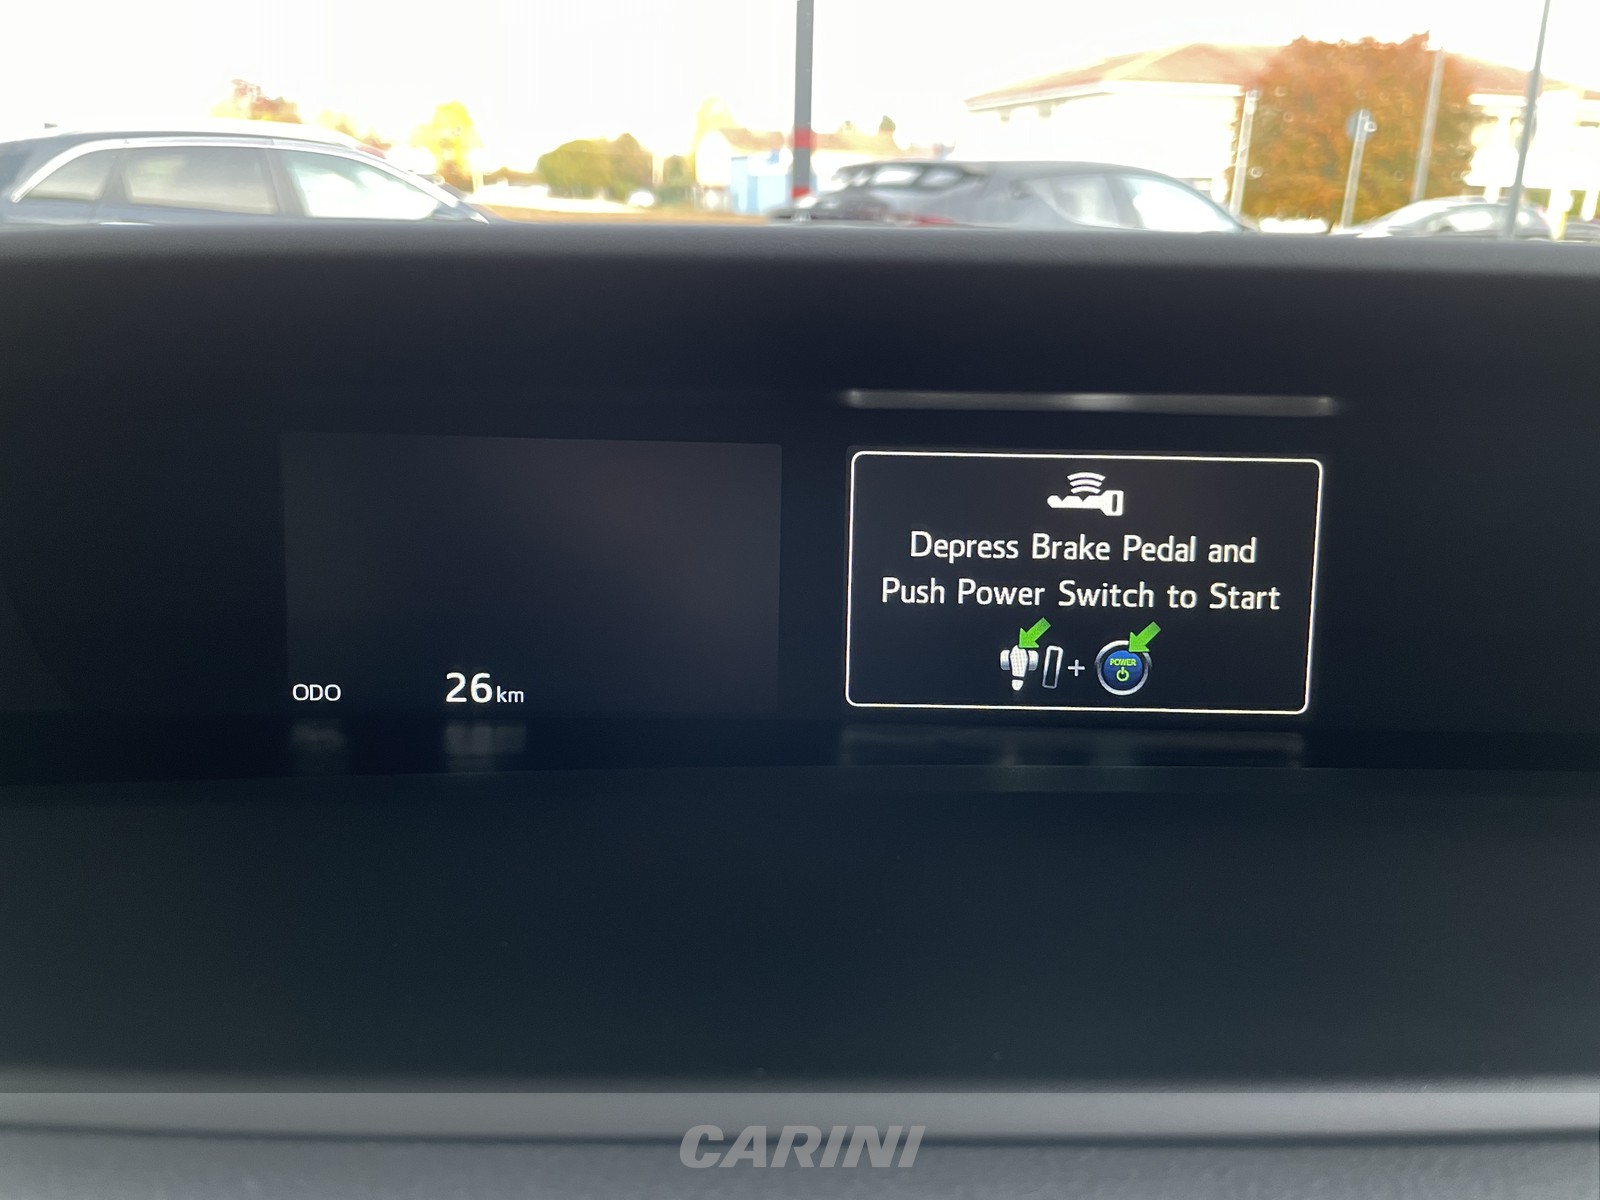 CARINI Toyota Prius